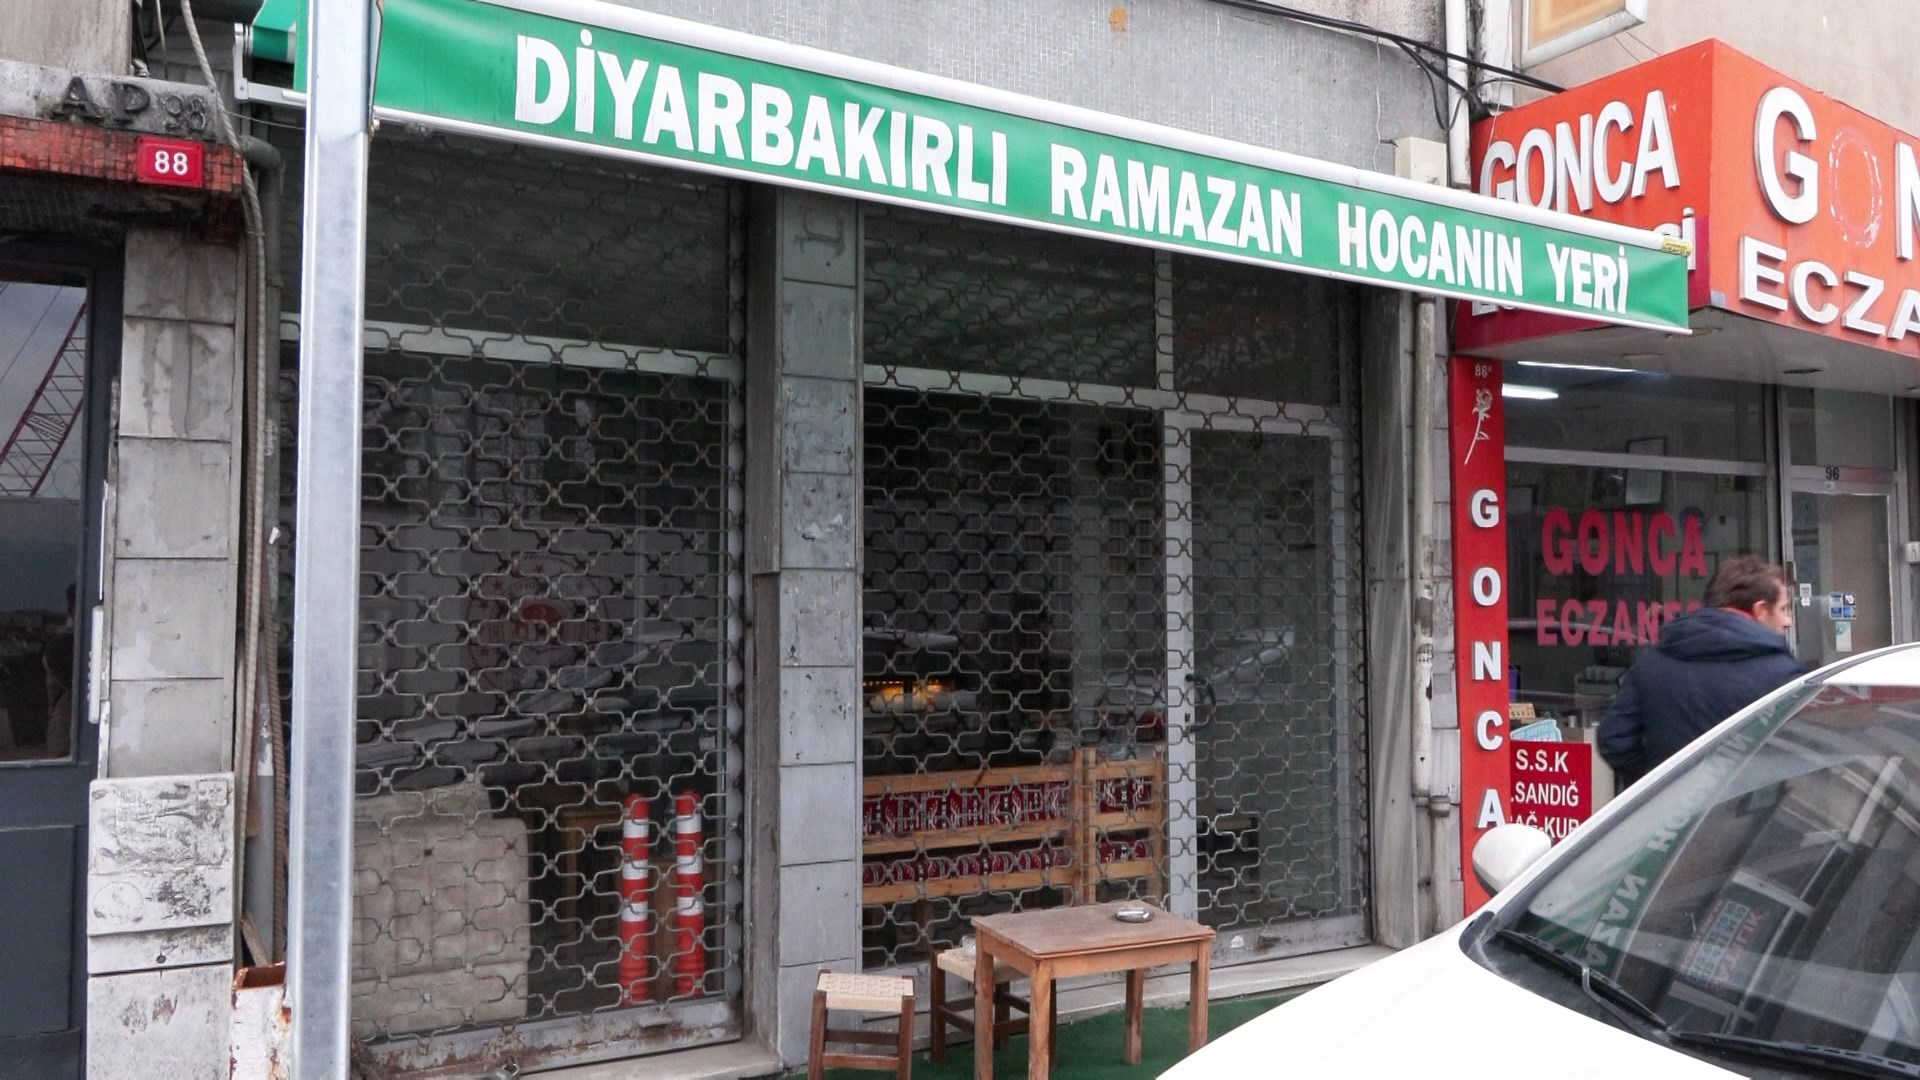 diyarbakirli-ramazan-hoca-olduruldu-1-8037-dhaphoto4.jpg